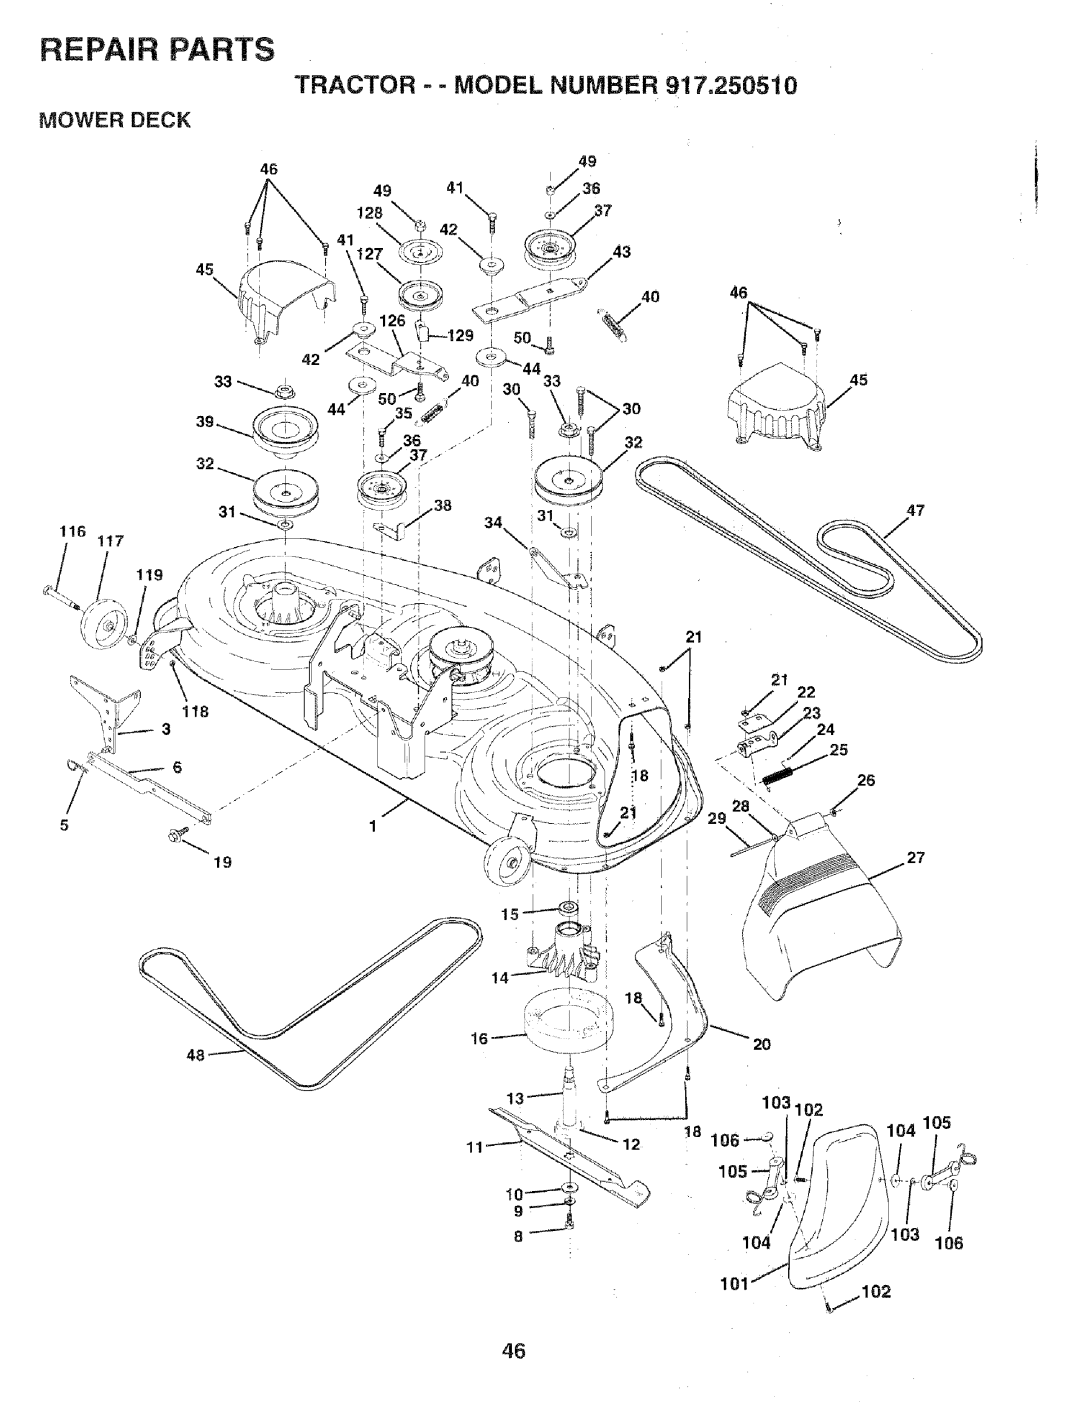 Sears 917.25051 manual Tractor -- Model Number, Repair Parts, Mower Deck, 104 101 